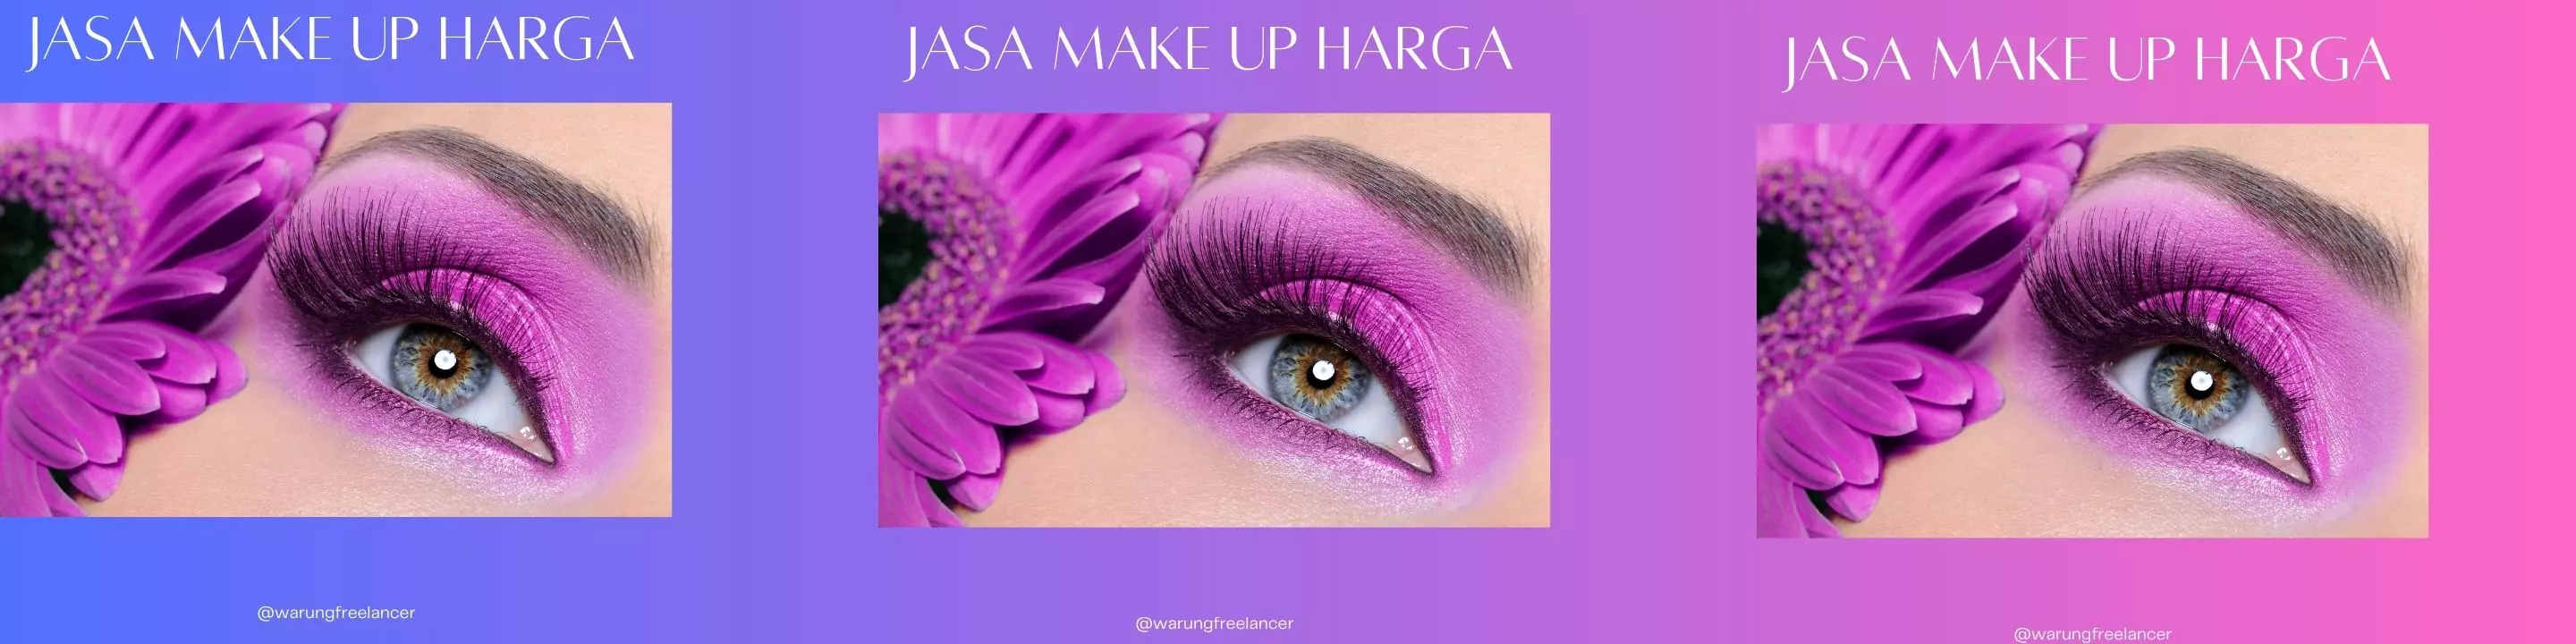 Jasa Make Up Harga